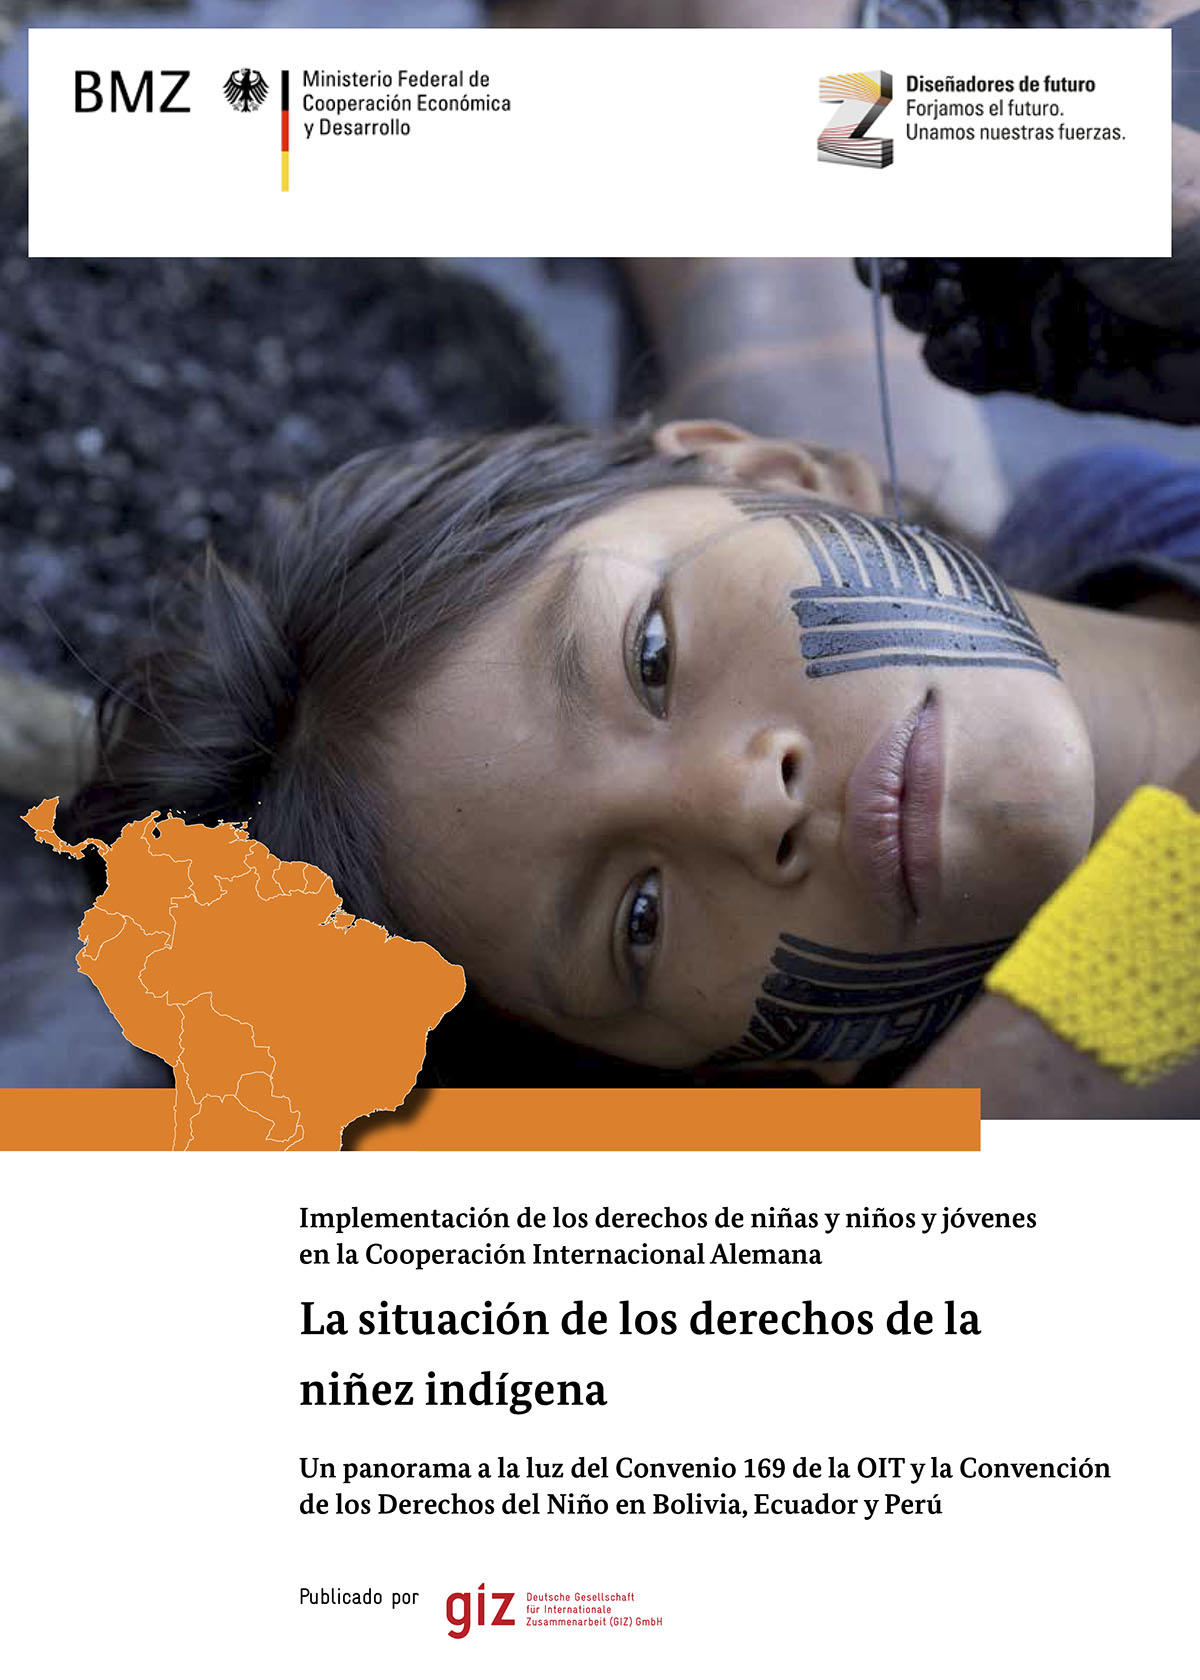 La situación de los derechos de la niñez indígena. Un panorama a la luz del Convenio 169 de la OIT y la Convención de los Derechos del Niño en Bolivia, Ecuador y Perú